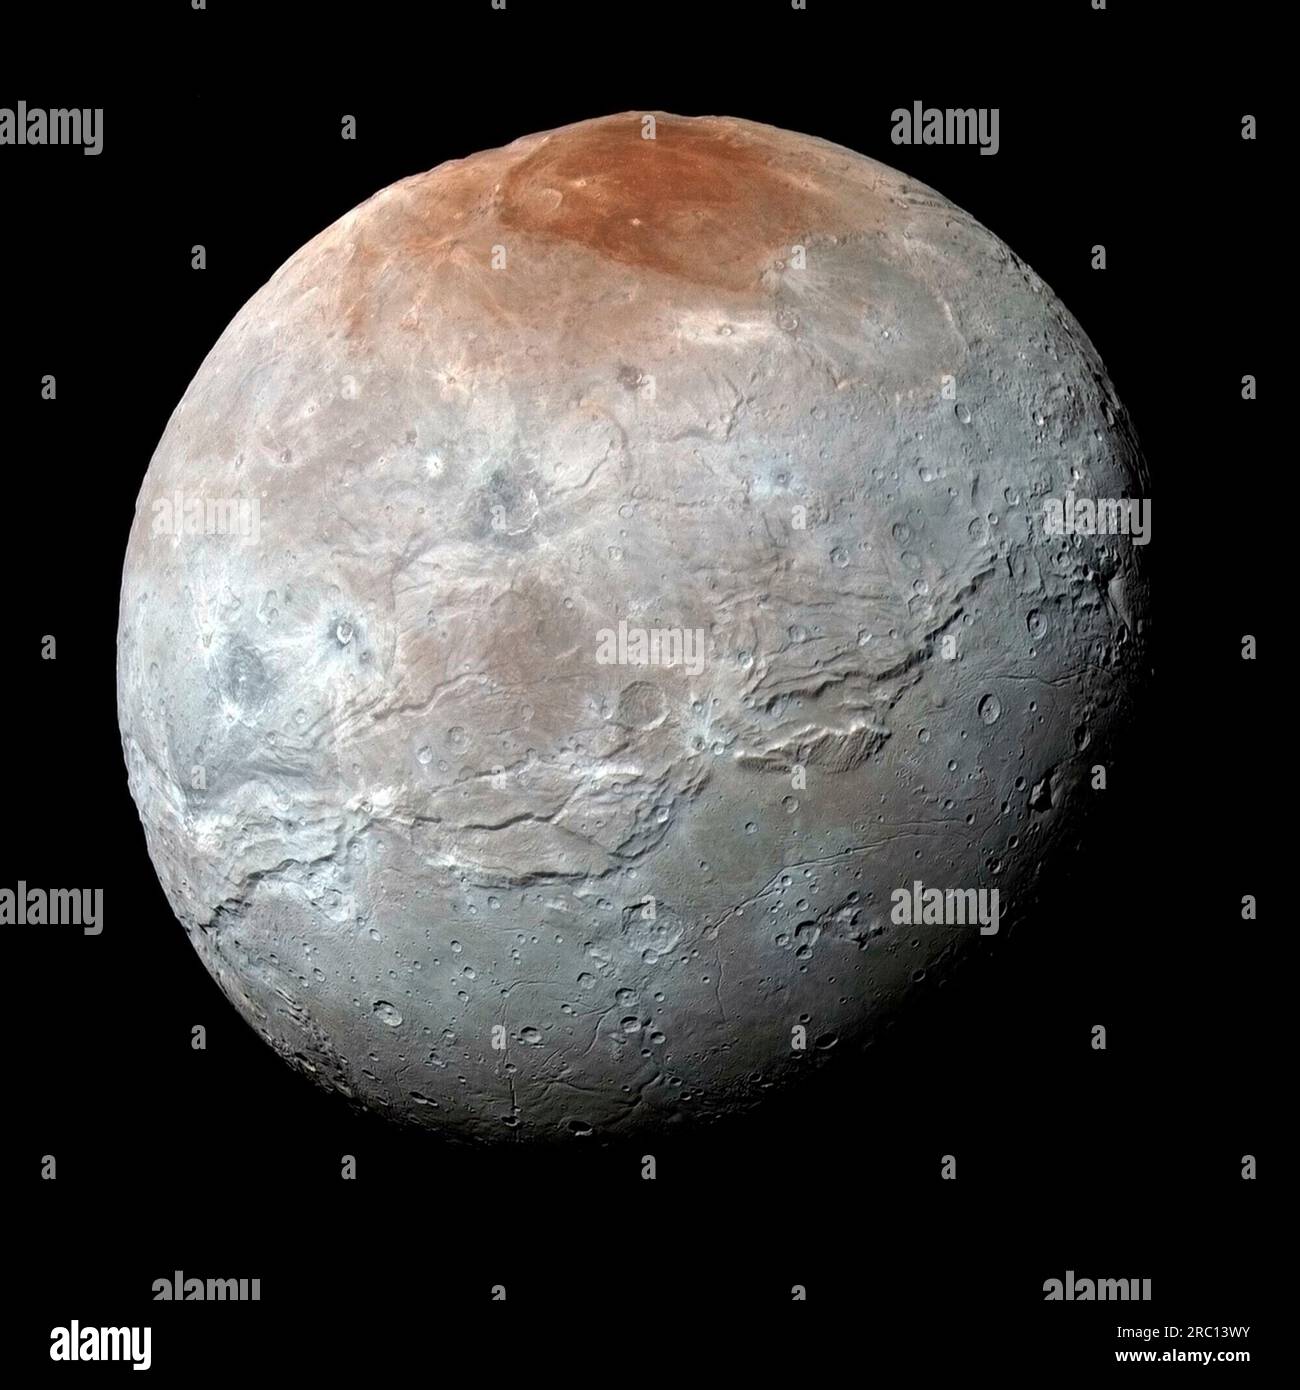 La tavolozza dei colori di Charon non è così varia come quella di Plutone; la più sorprendente è la regione polare nord rossastra (in alto), chiamata informalmente Mordor macula, come visto dai New Horizons della NASA. La navicella spaziale catturò questa vista a colori ad alta risoluzione di Charon, la più grande luna di Plutone, poco prima dell'avvicinamento più vicino il 14 luglio 2015. L'immagine combina immagini blu, rosse e a infrarossi scattate dalla Ralph/Multispectral Visual Imaging camera (MVIC) della navicella spaziale; i colori vengono elaborati per evidenziare al meglio la variazione delle proprietà superficiali in Charon.New Horizons ha condotto un sorvolo di ricognizione di sei mesi da stu Foto Stock